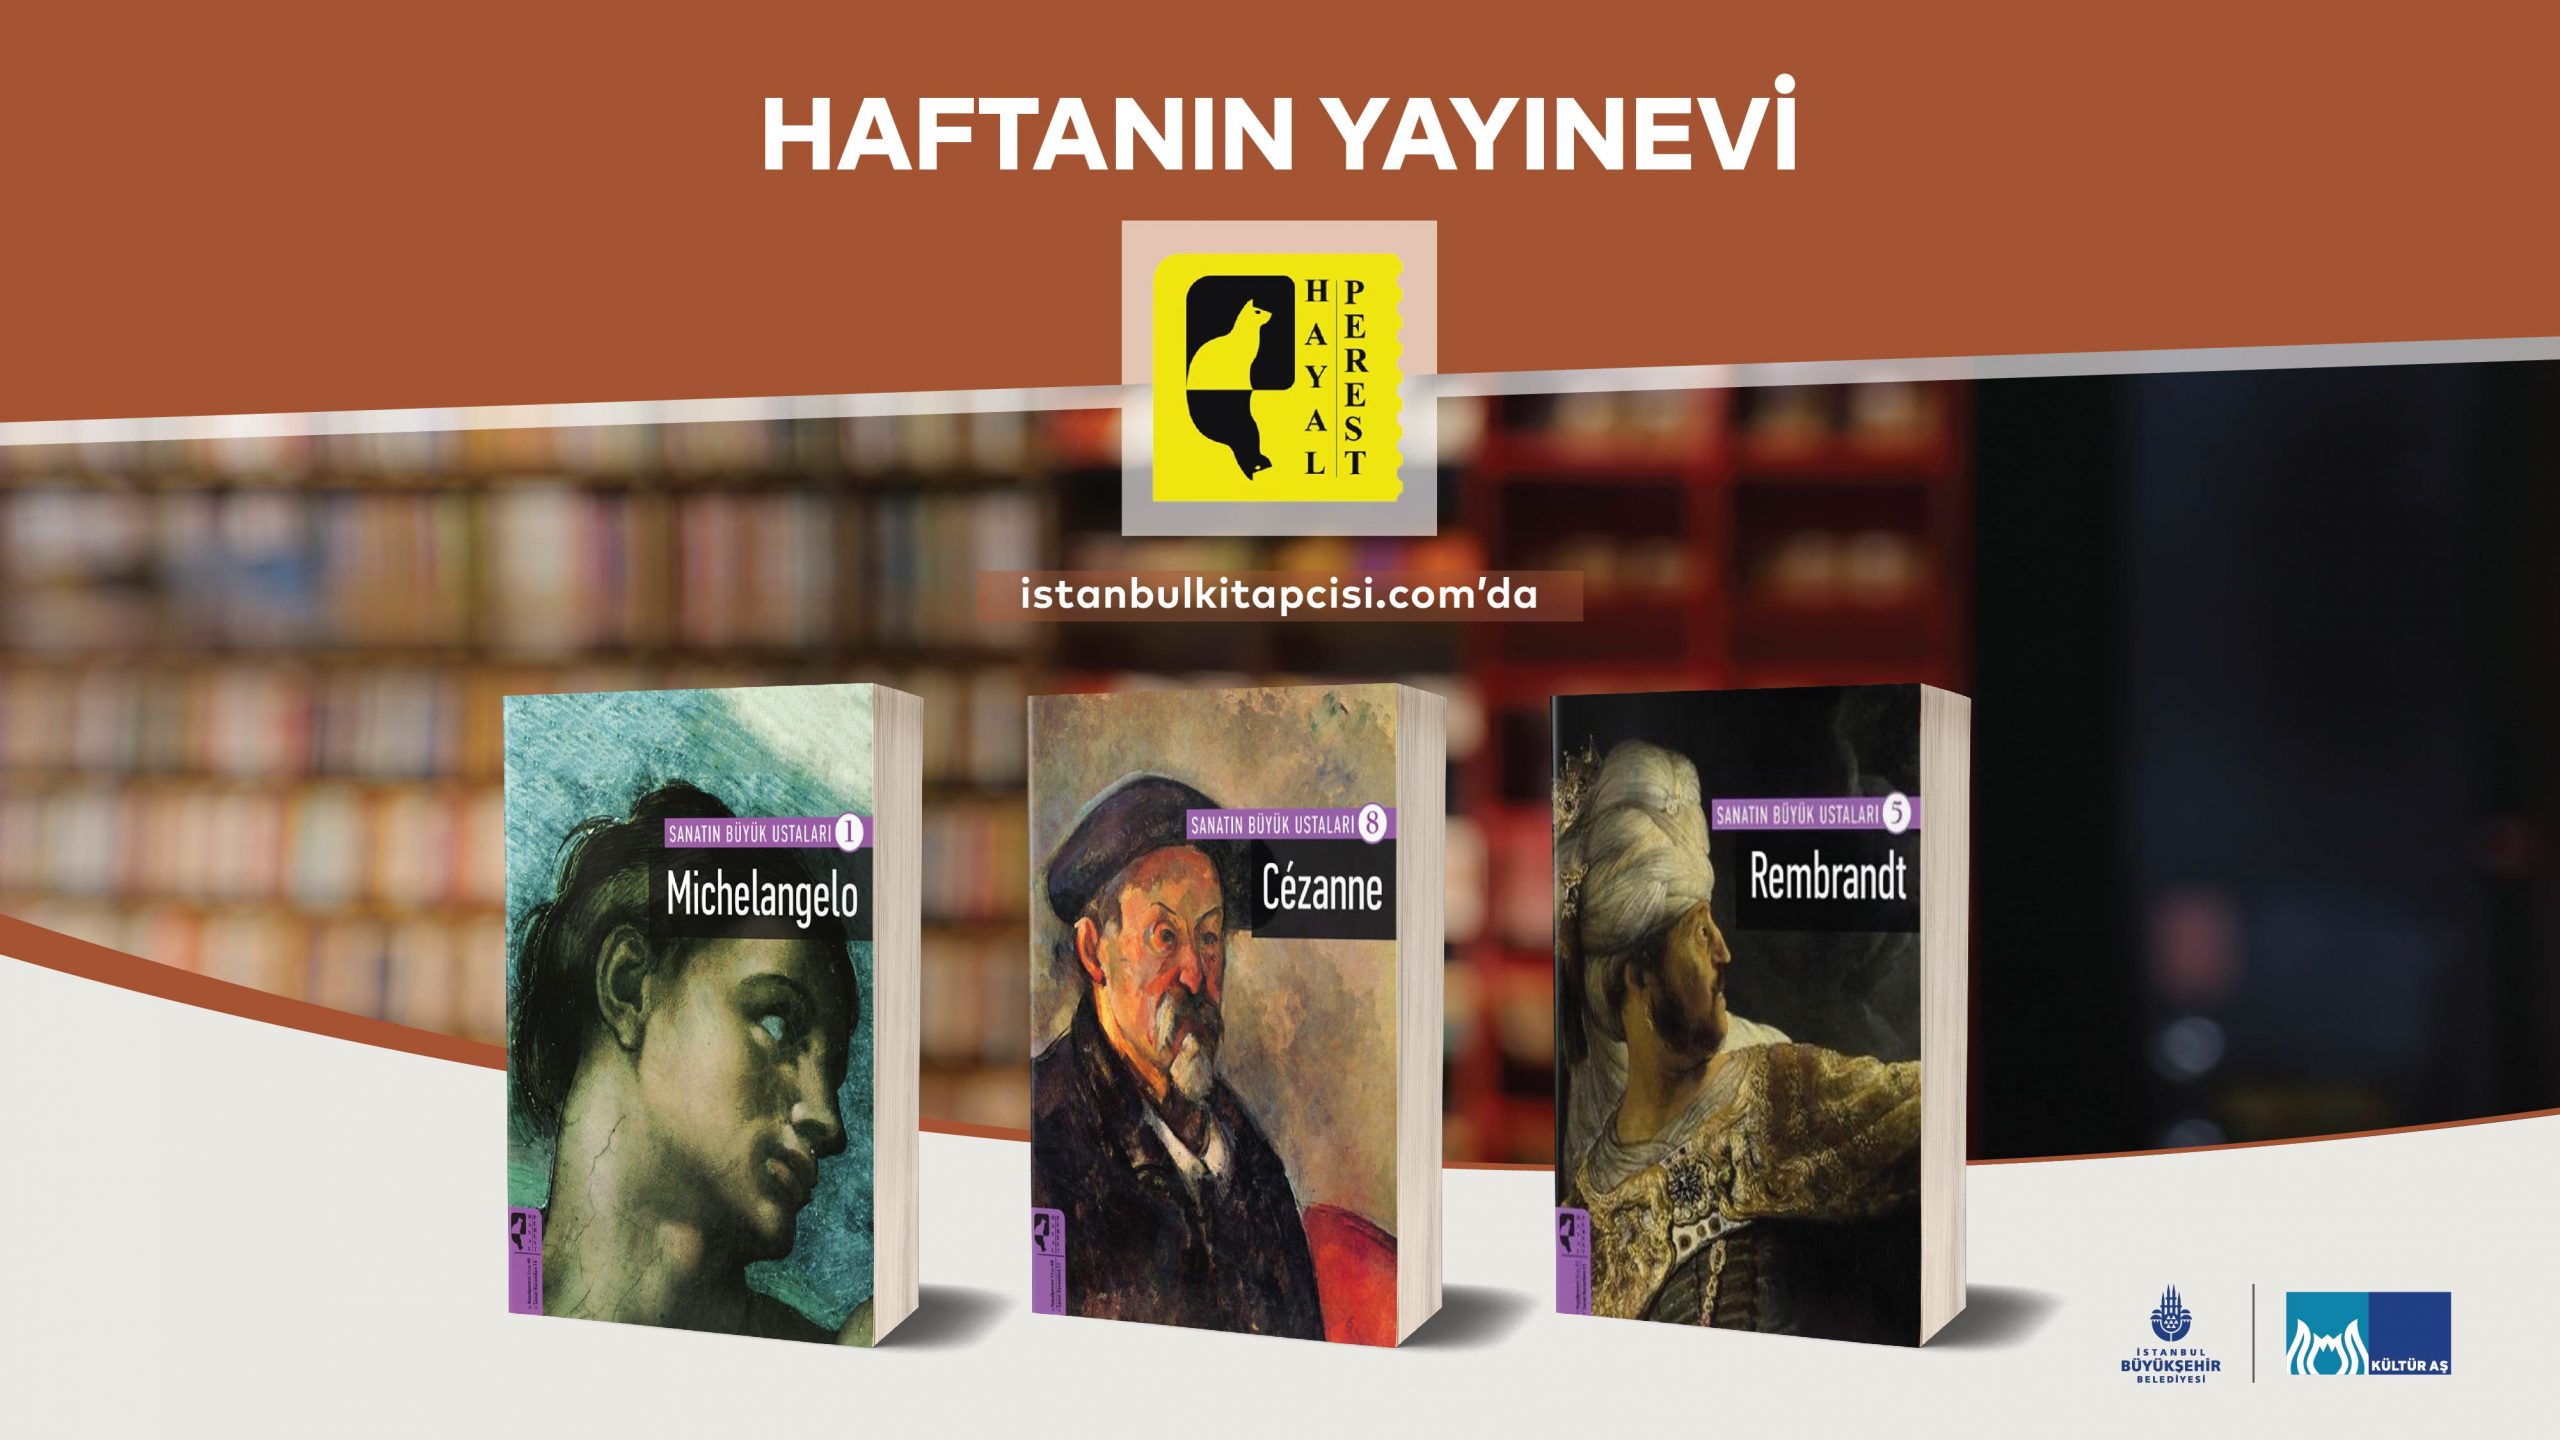 www.istanbulkitapcisi.com’da haftanın yayınevi: Hayalperest